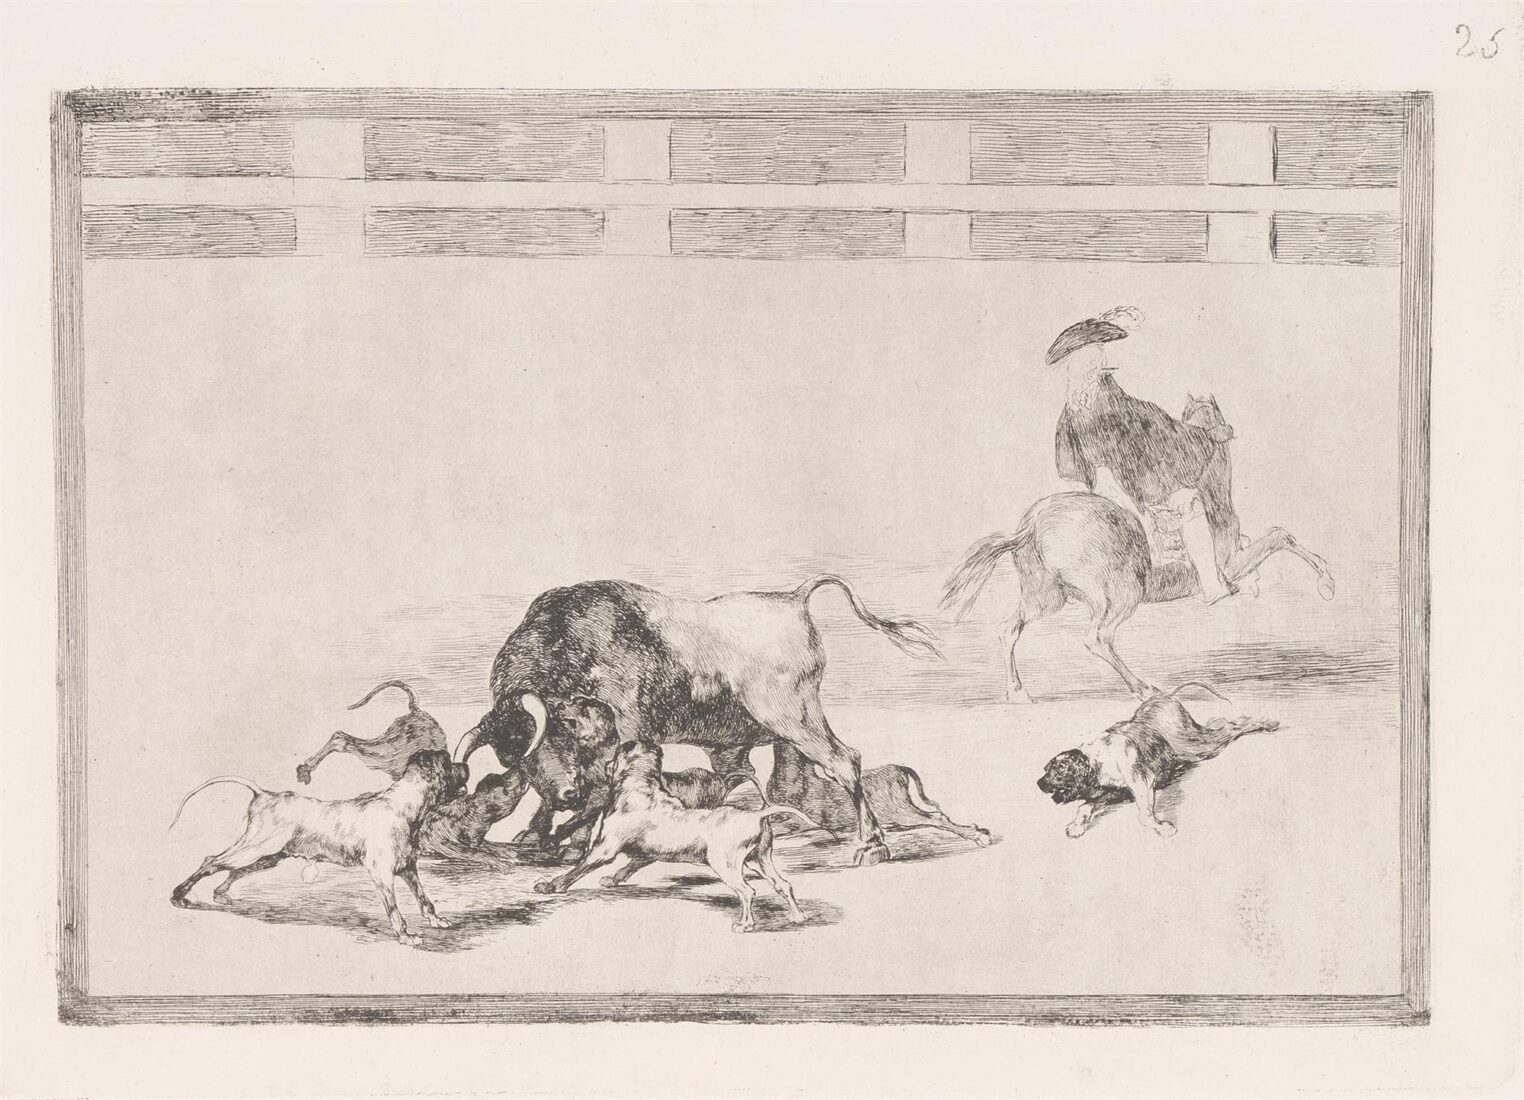 Ξαμολούν σκύλους πάνω στον ταύρο - Goya y Lucientes Francisco